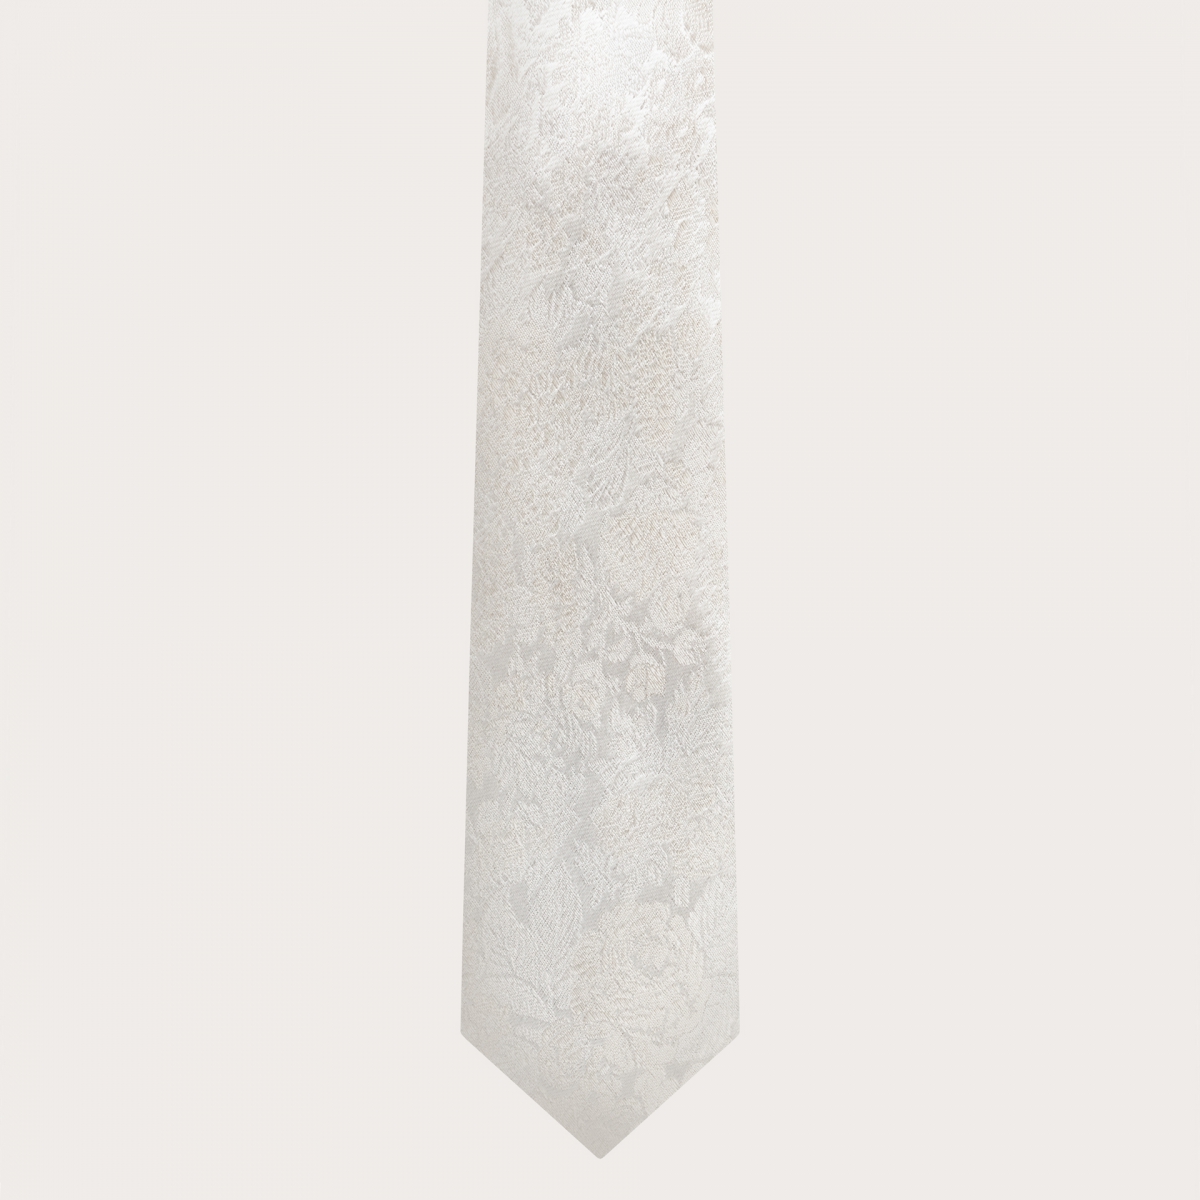 BRUCLE Cravatta matrimonio in raffinata seta jacquard bianca